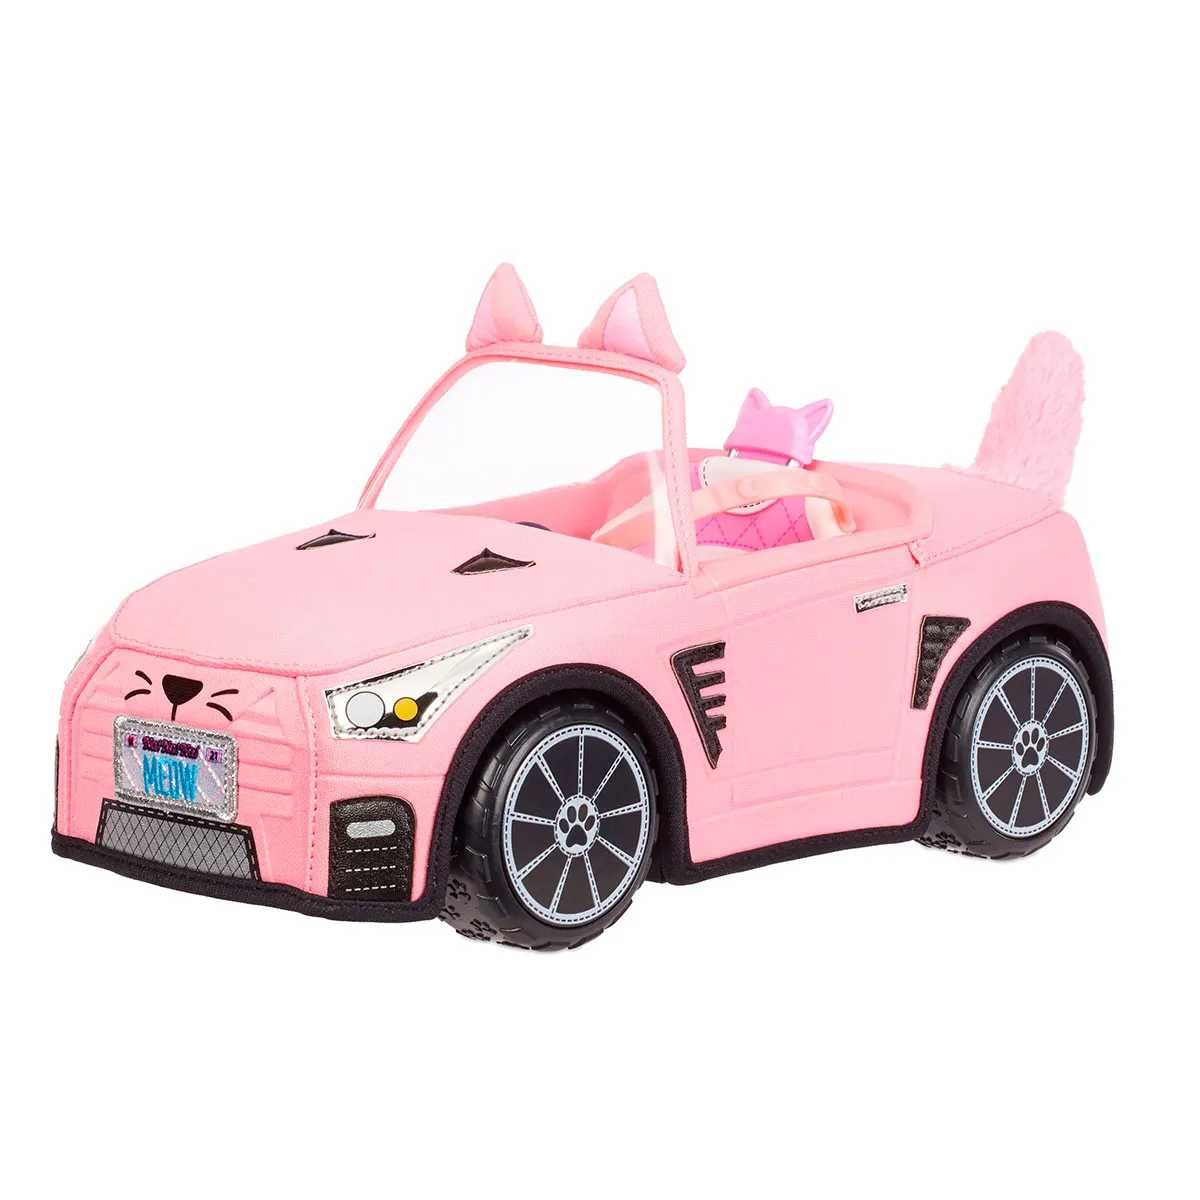 Машинка для ляльки Na! Na! Na! Surprise Кетмобіль, рожевий